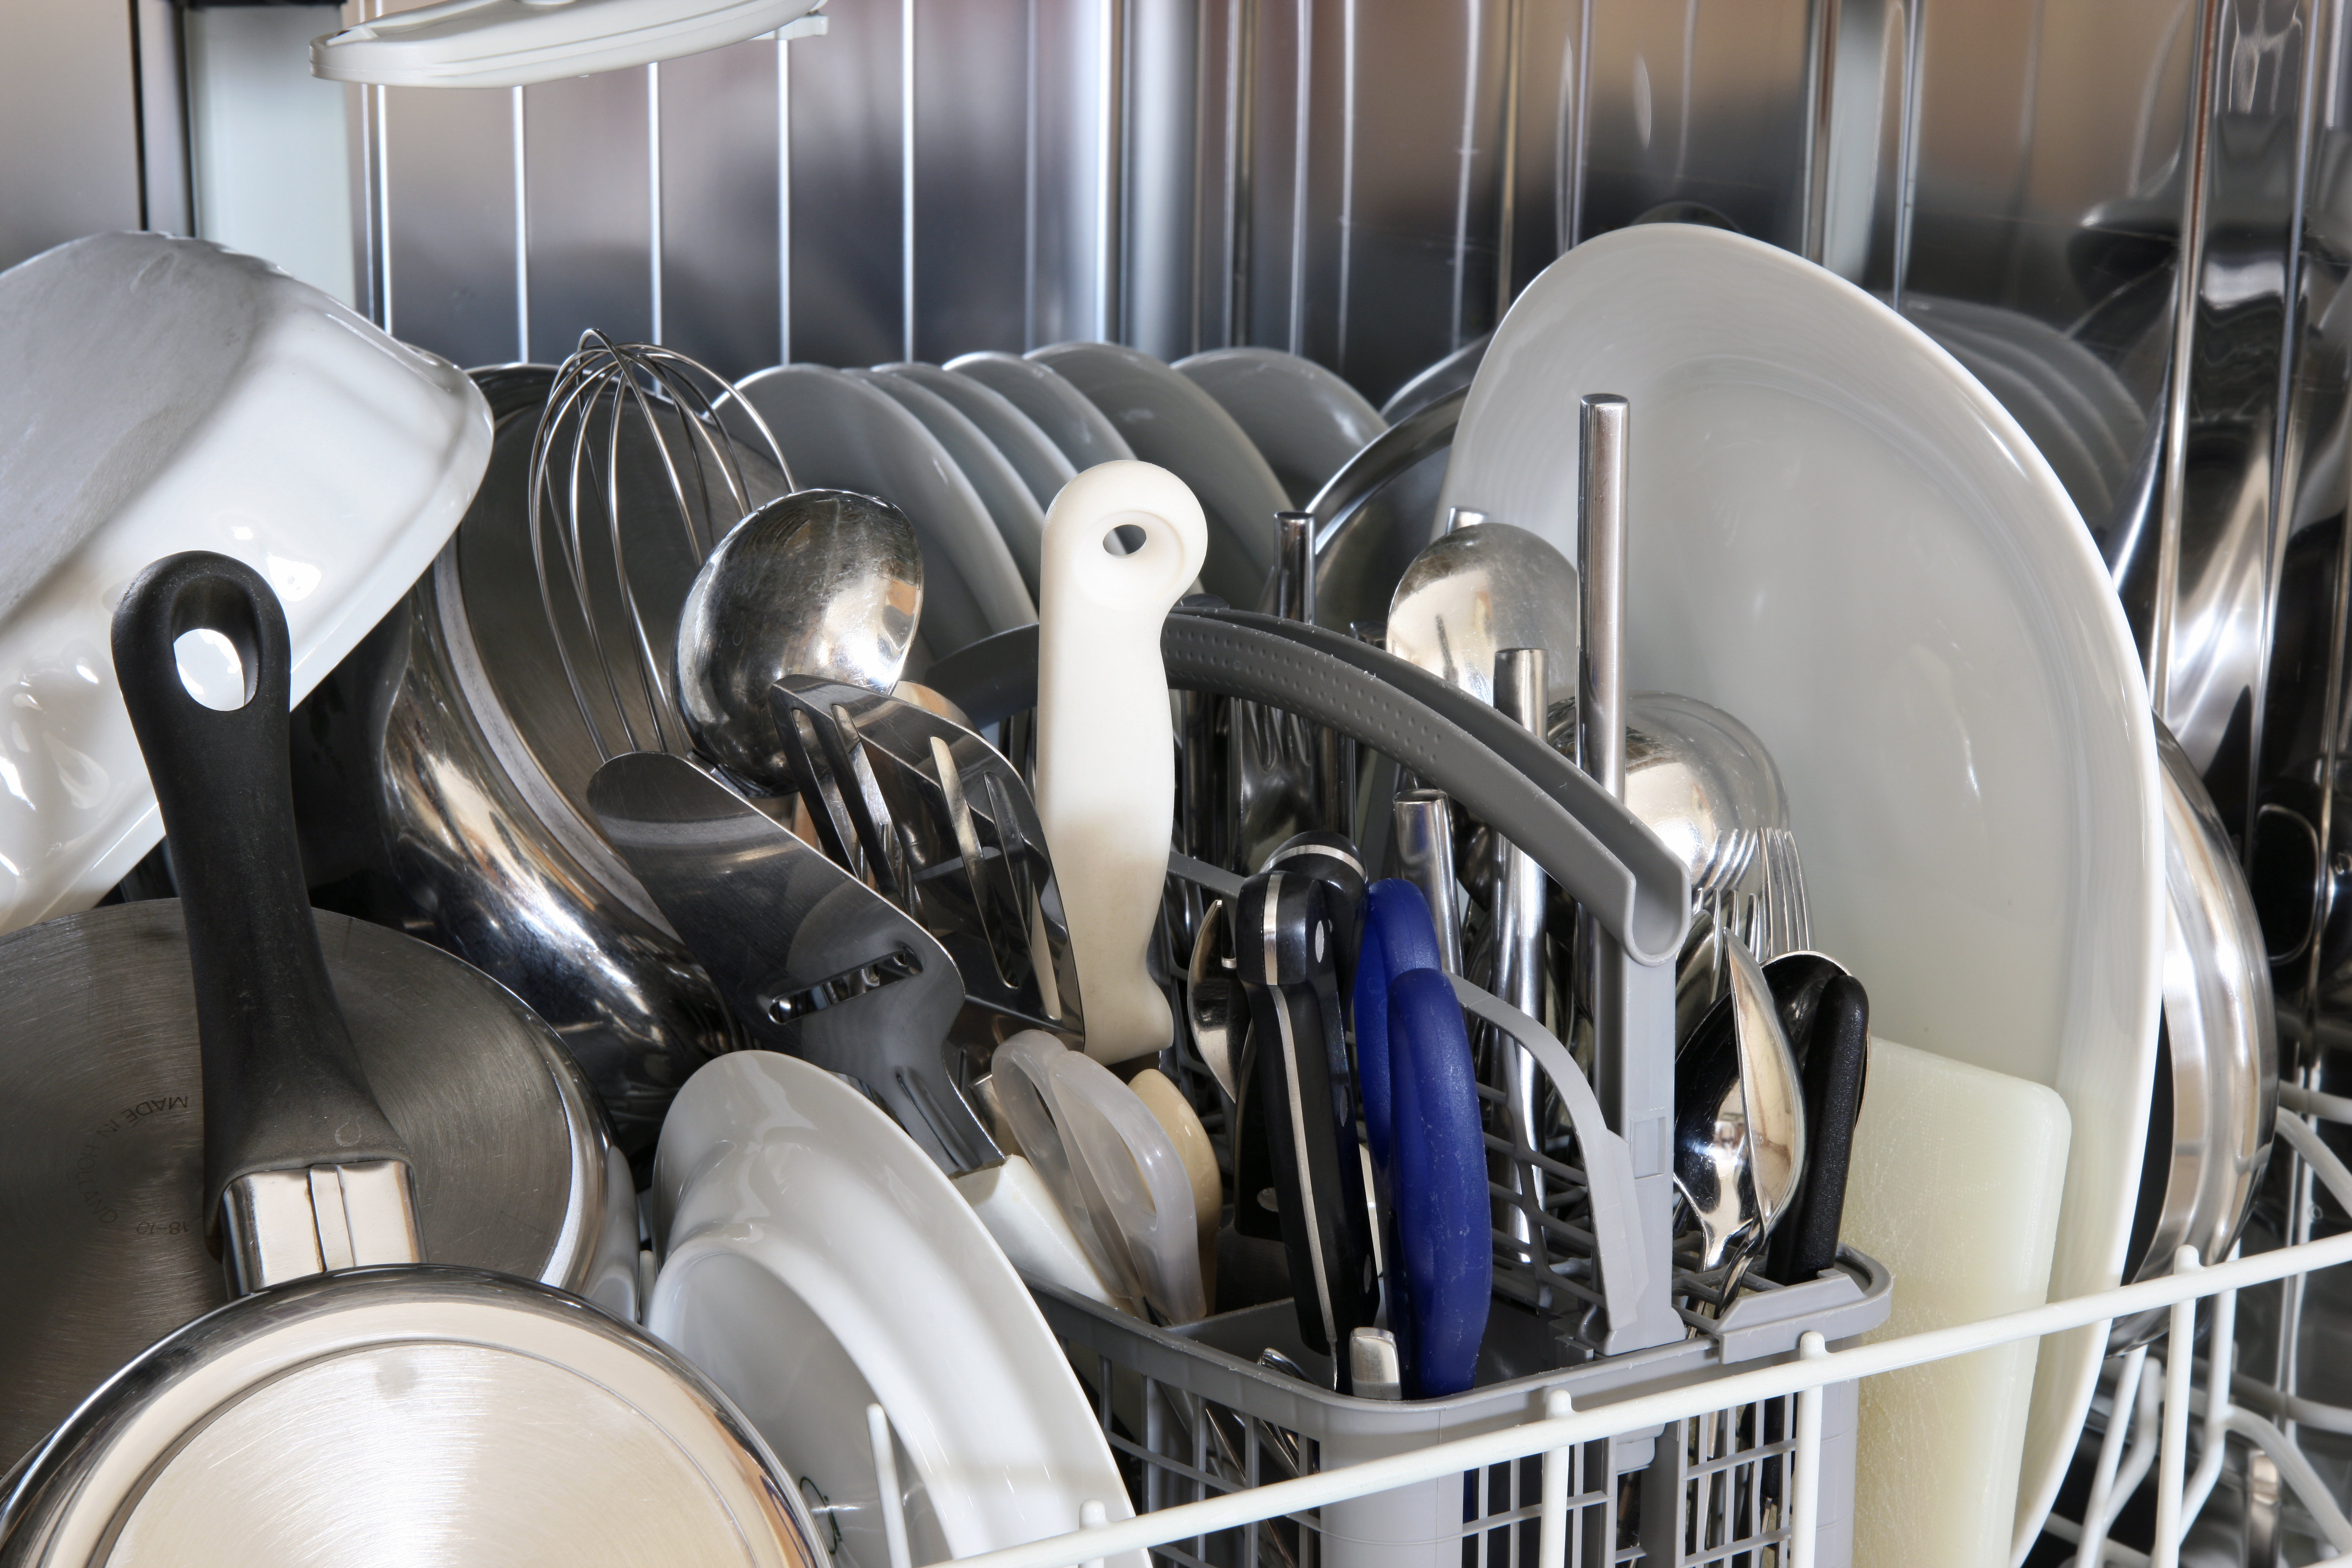 Кастрюля можно мыть в посудомоечной машине. Столовые приборы в посудомойке. Ножи в посудомоечной машине. Посуда в посудомоечной машине. Посудомоечная машина для кастрюль и сковородок.